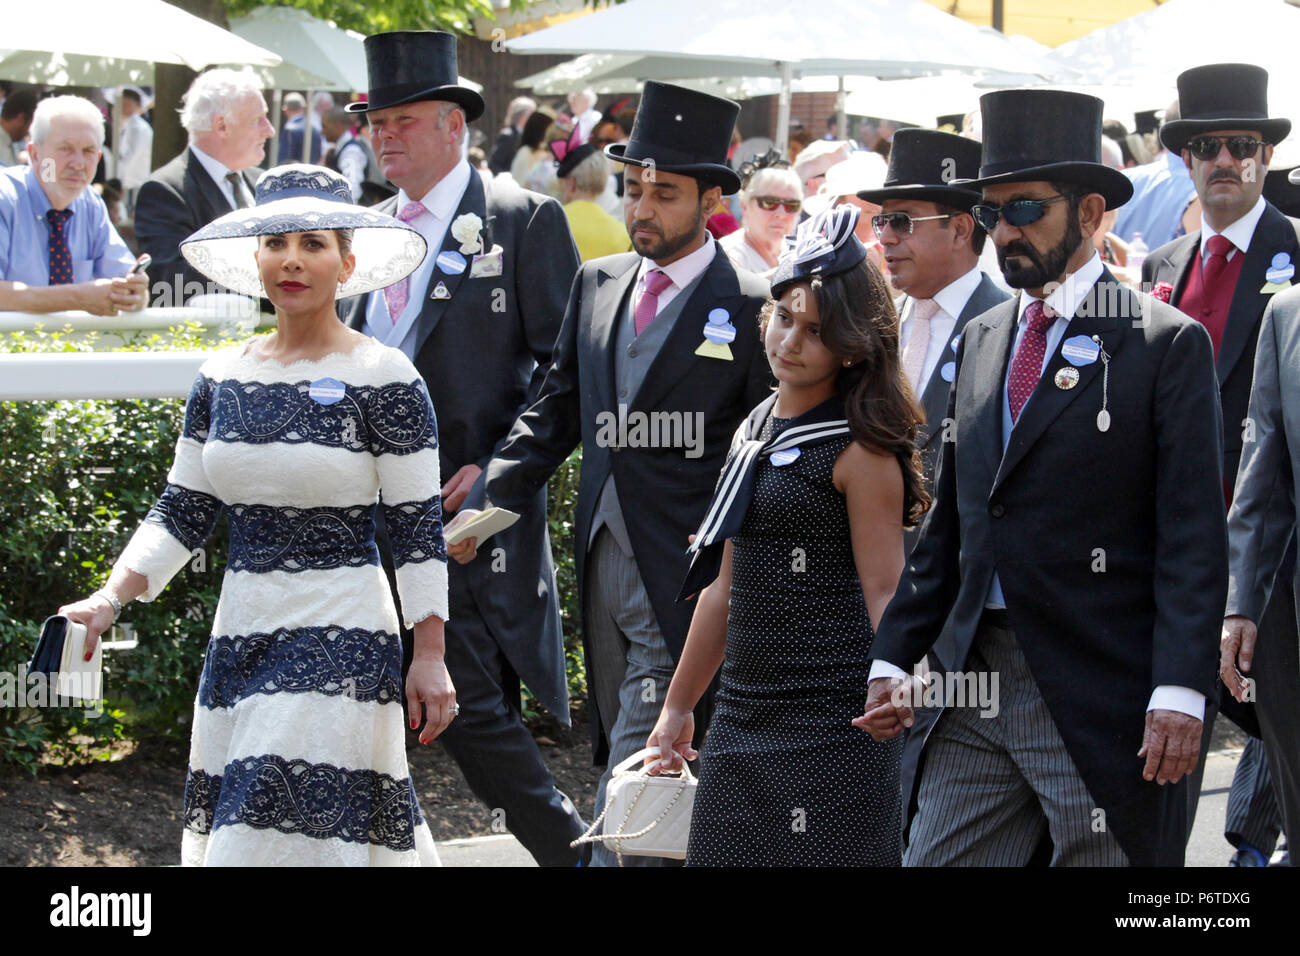 Le Royal Ascot, Sheikh Mohammed bin Rashid Al Maktoum, sa fille Jalila et son épouse la princesse Haya de Jordanie arrivant à la parade ring Banque D'Images